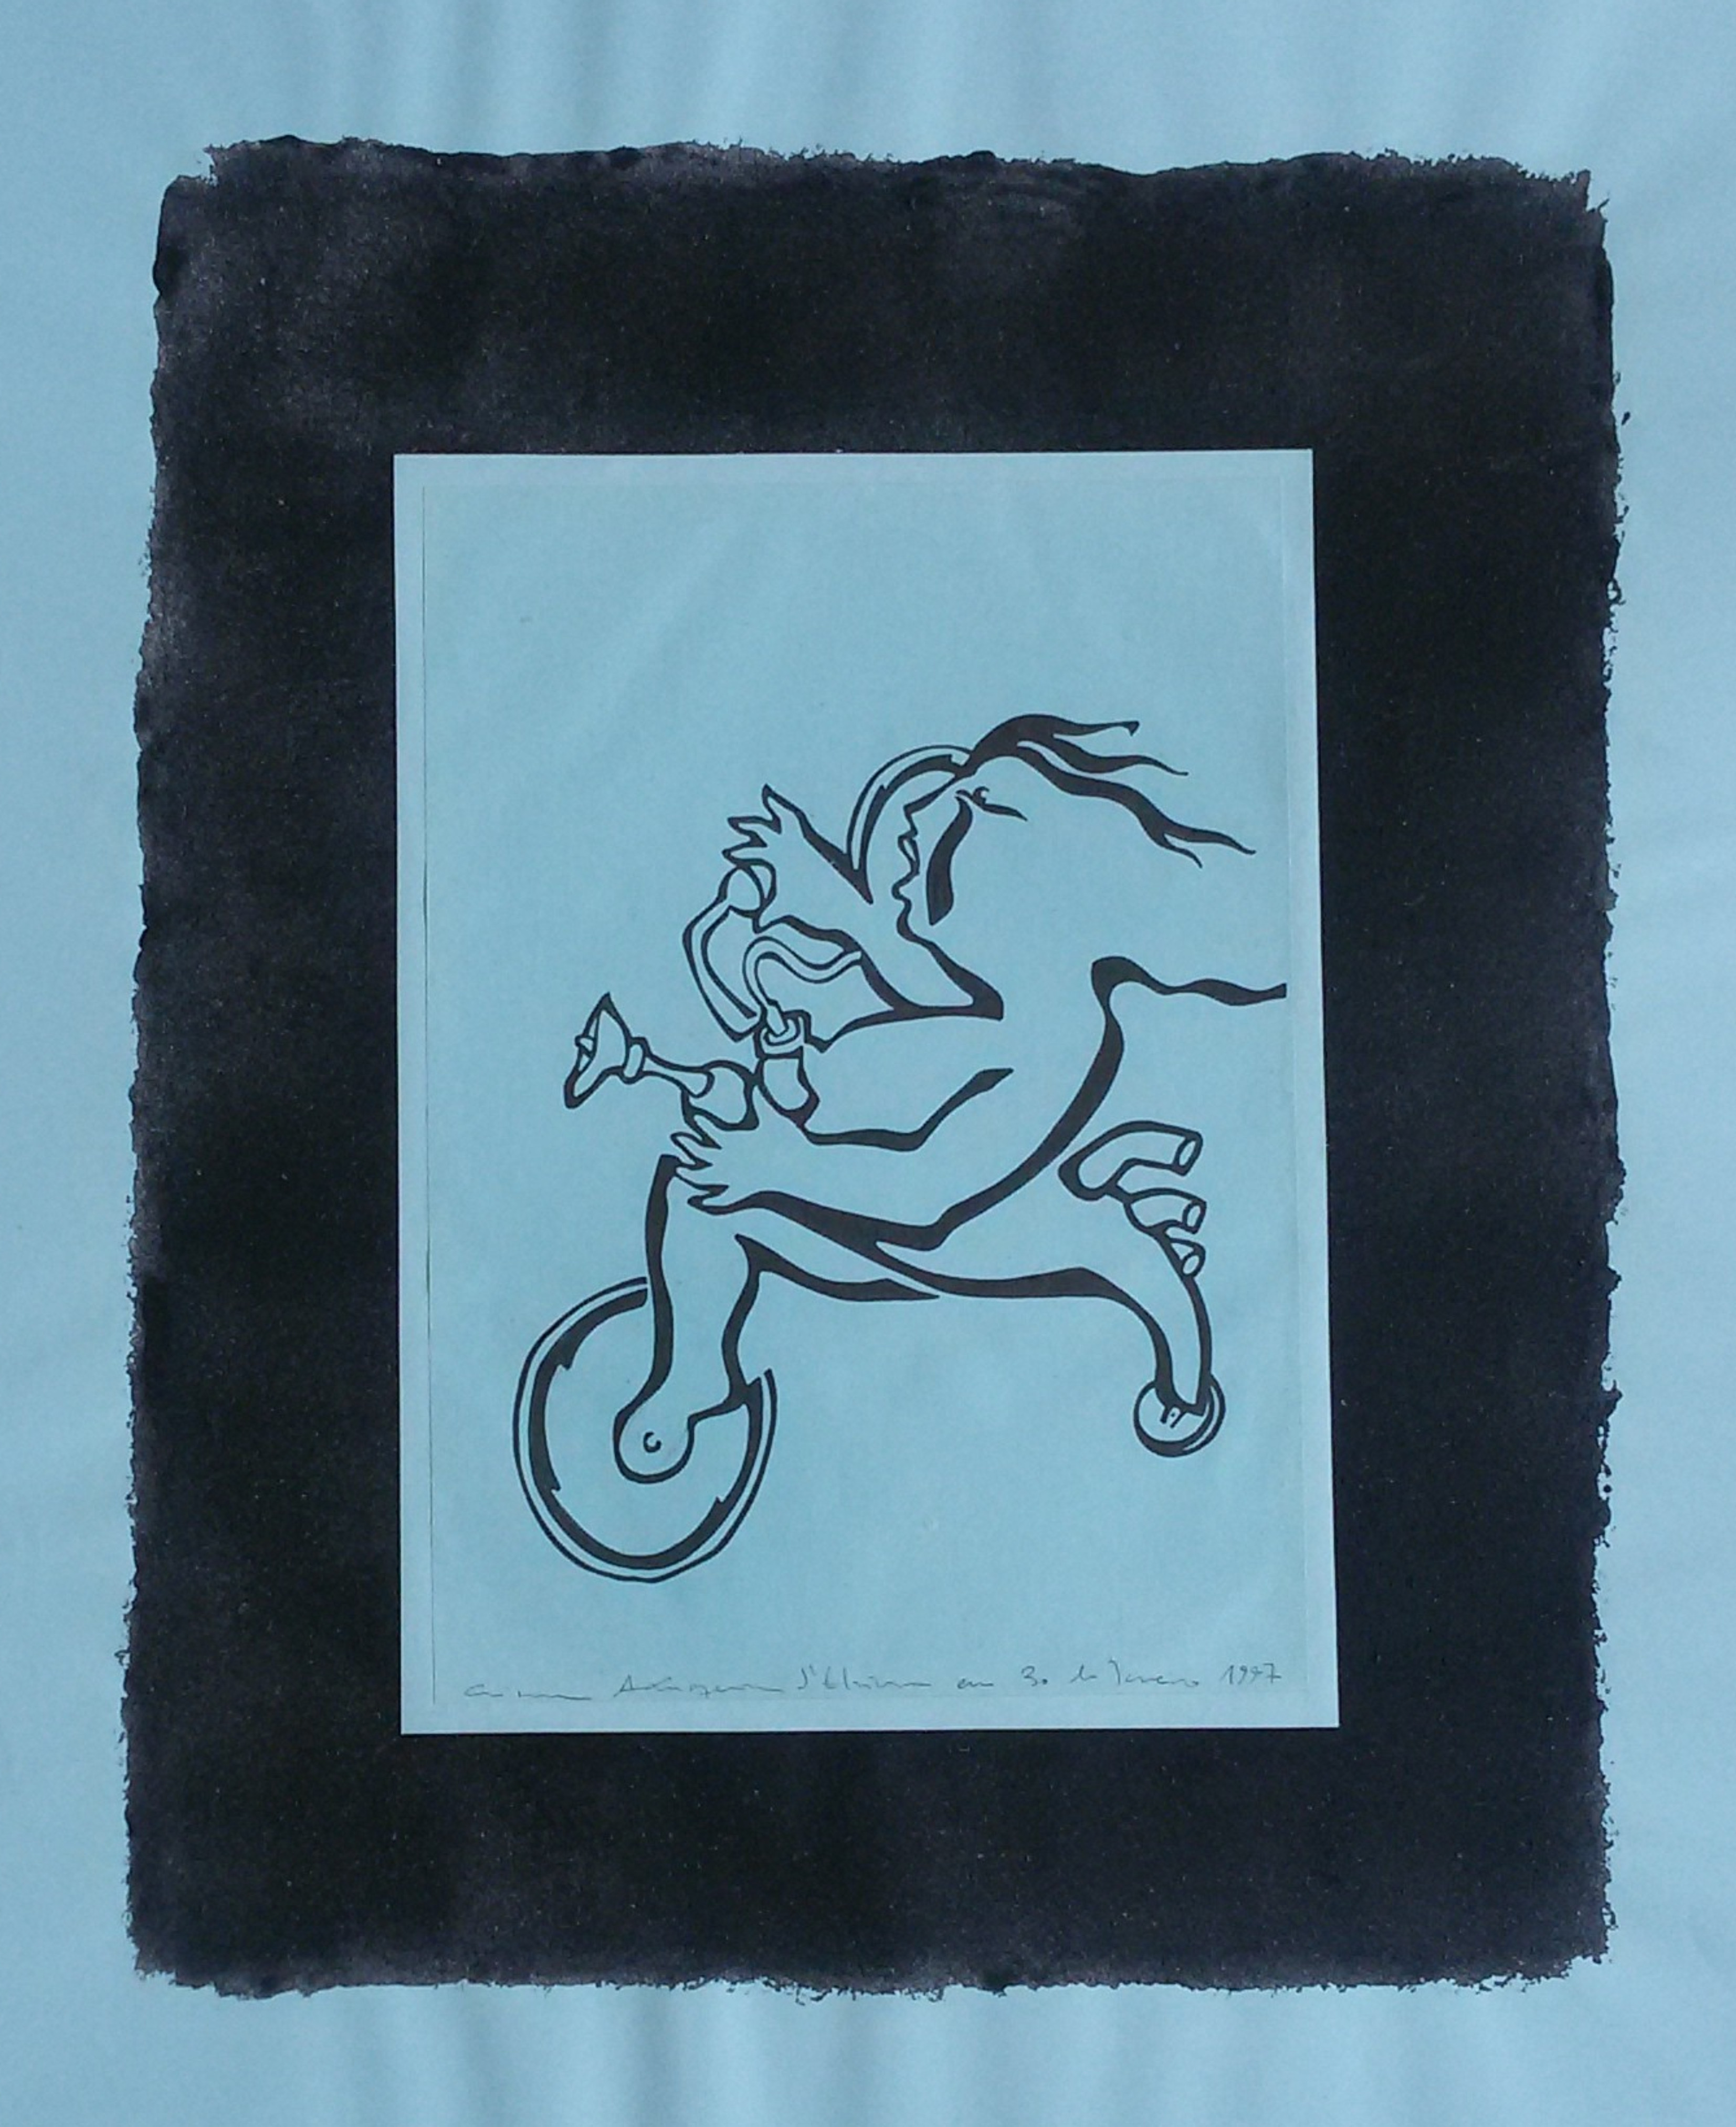 Ladislau da Regueira | Debuxar não é pintar  # O Tricípedo | 1997